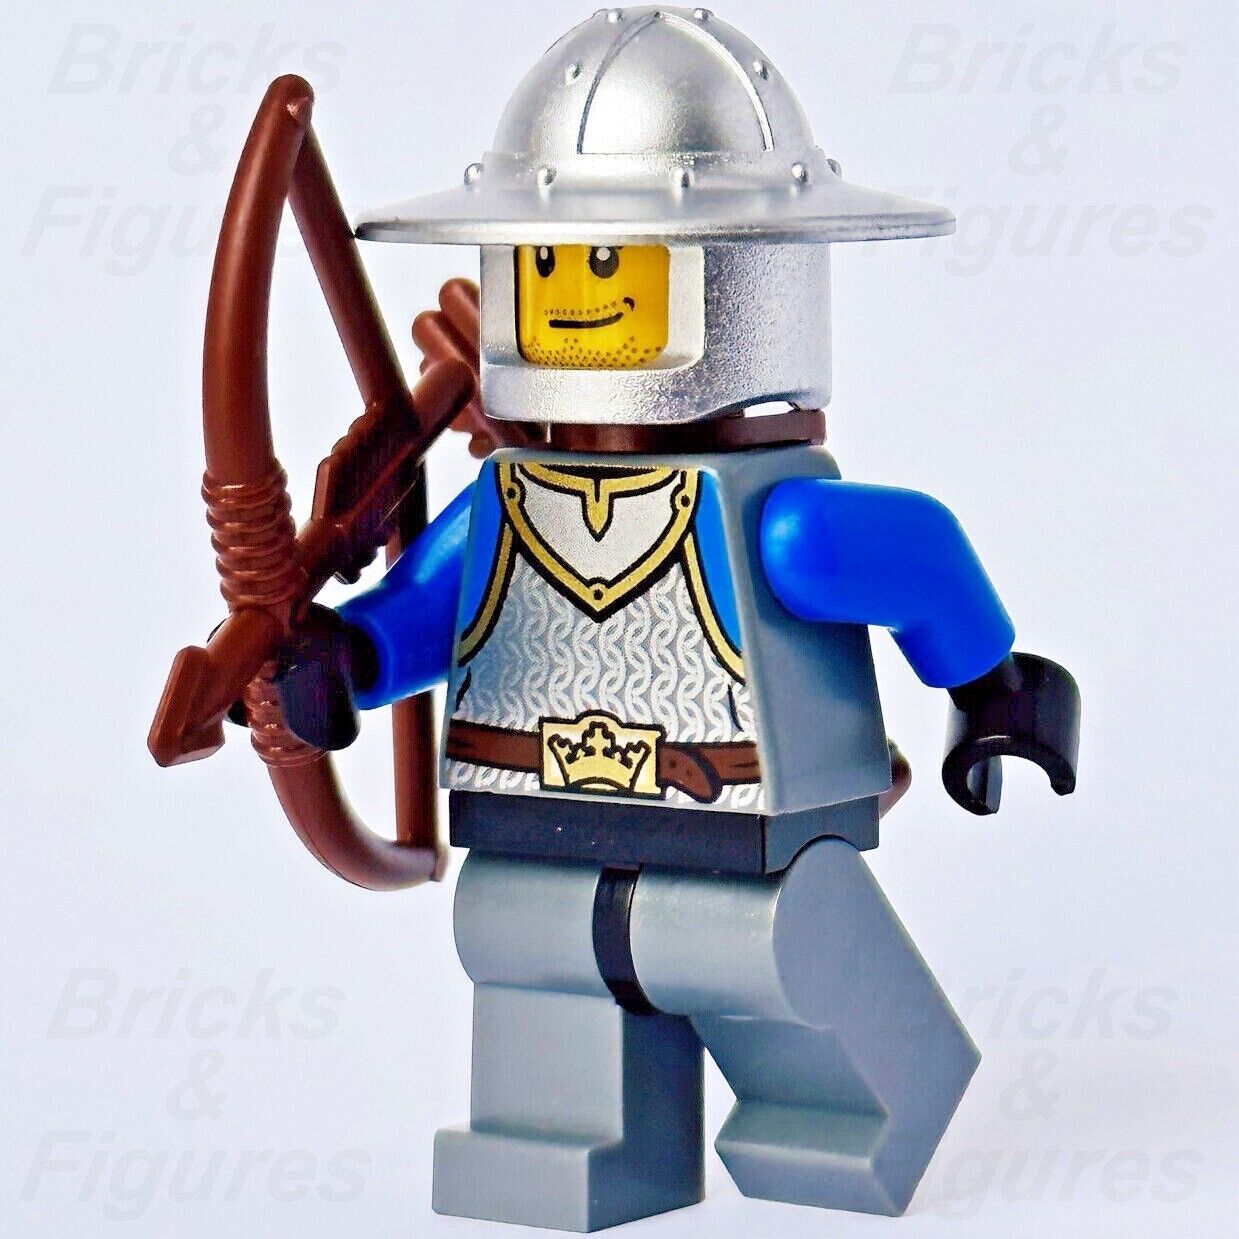 LEGO King's Knight Archer Castle Minifigure Bow & Quiver 70404 850888 cas531 - Bricks & Figures